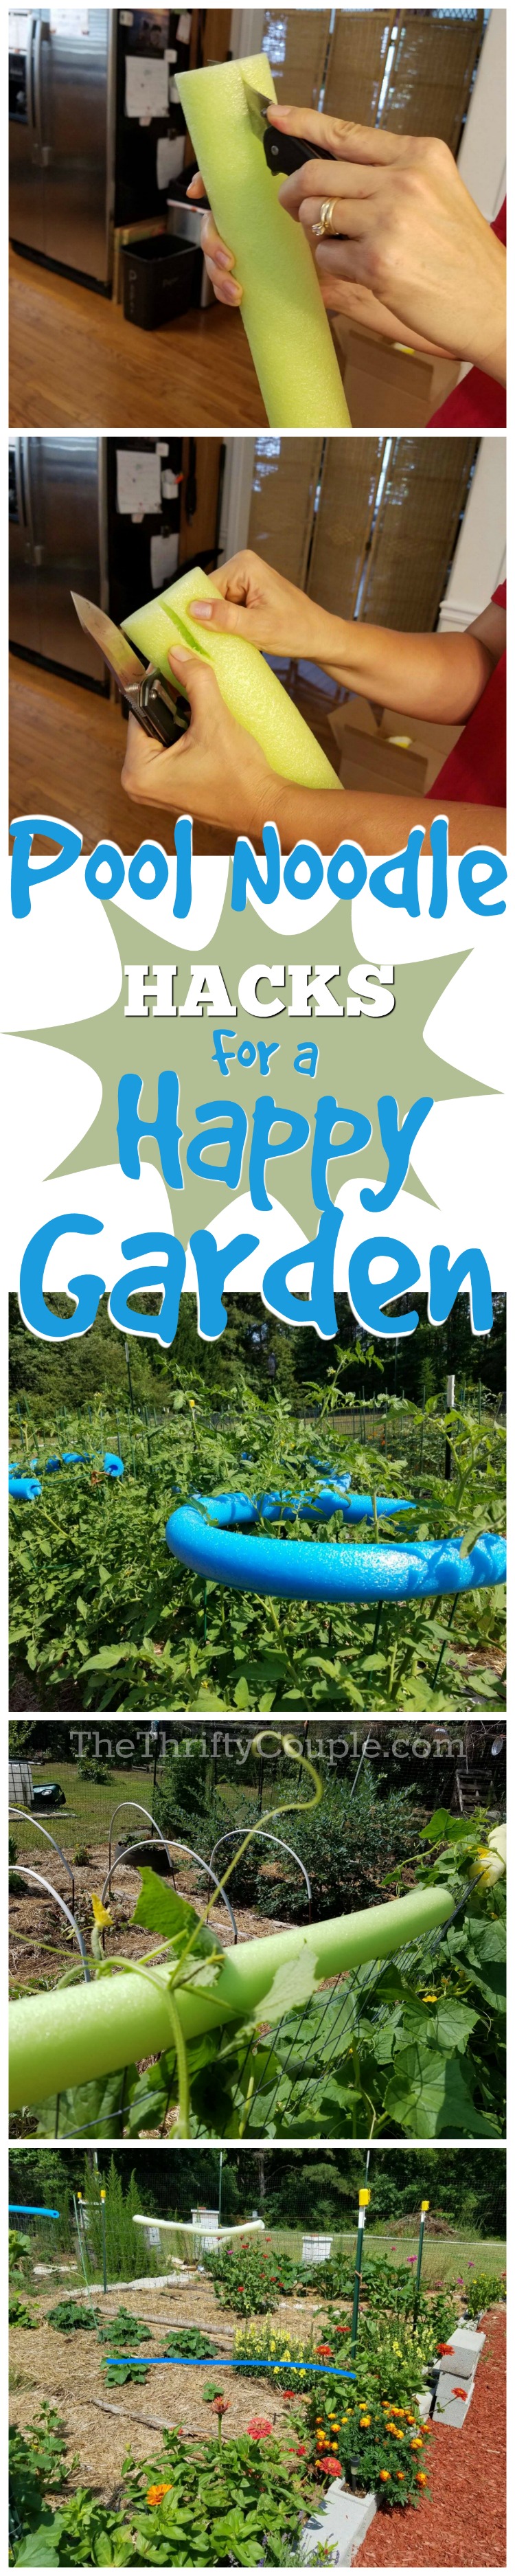 pool-noodle-hacks-for-a-happy-garden-ideas